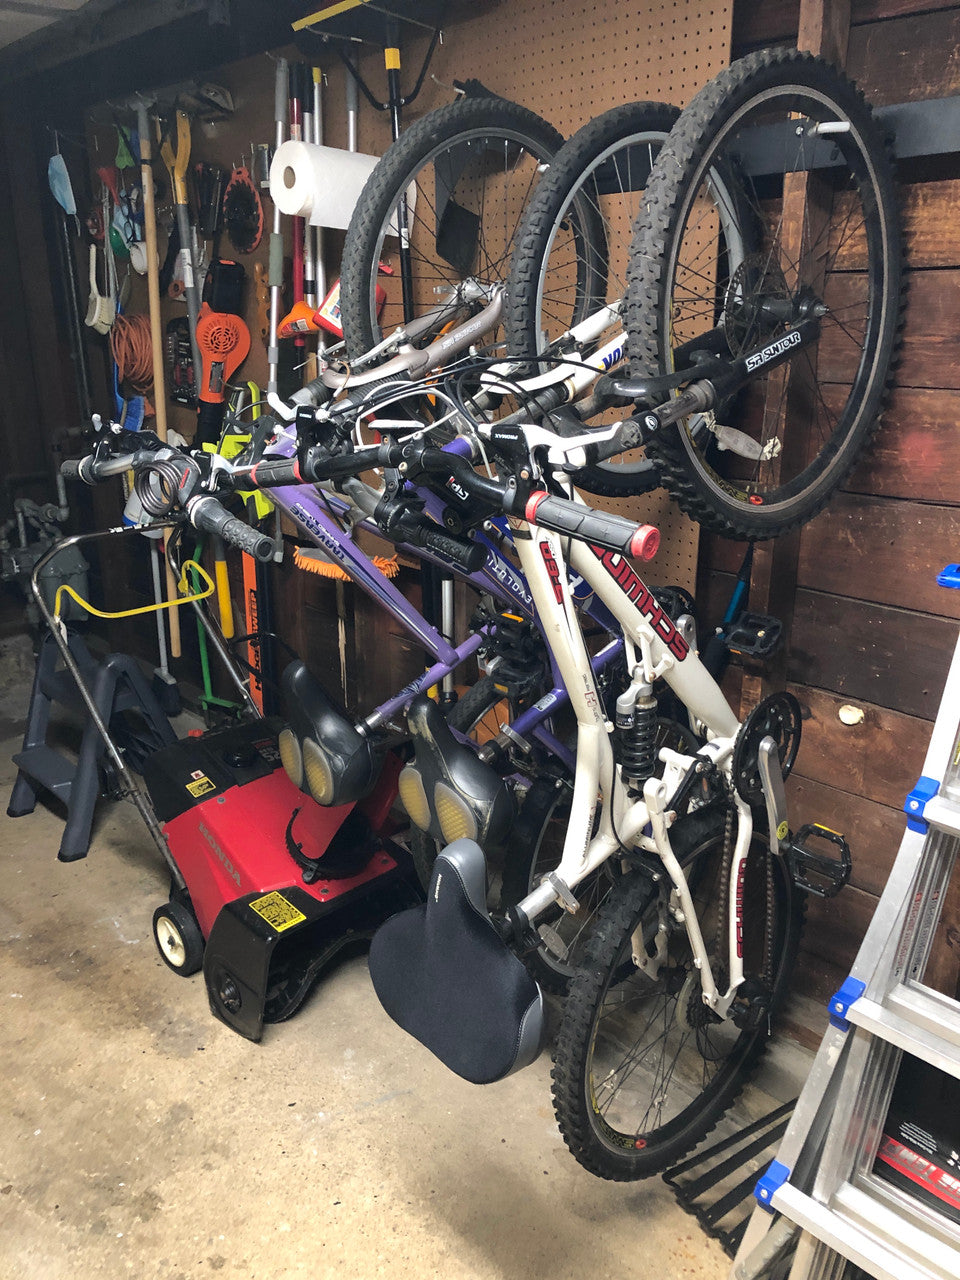 4 bike wall storage rack hooks